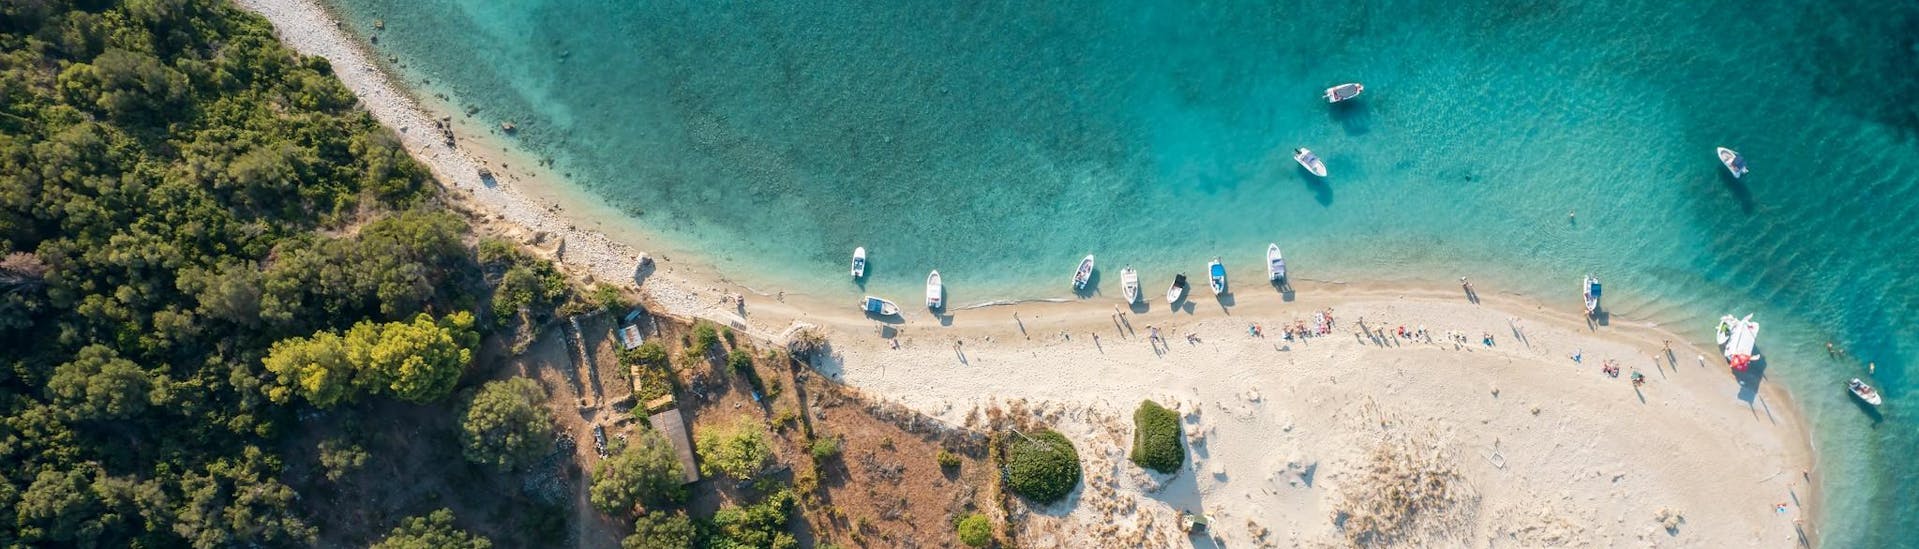 Blick auf den Strand von Marathonisi, ein wunderschöner Ort, den Sie bei einer Bootstour auf Zakynthos besuchen können.